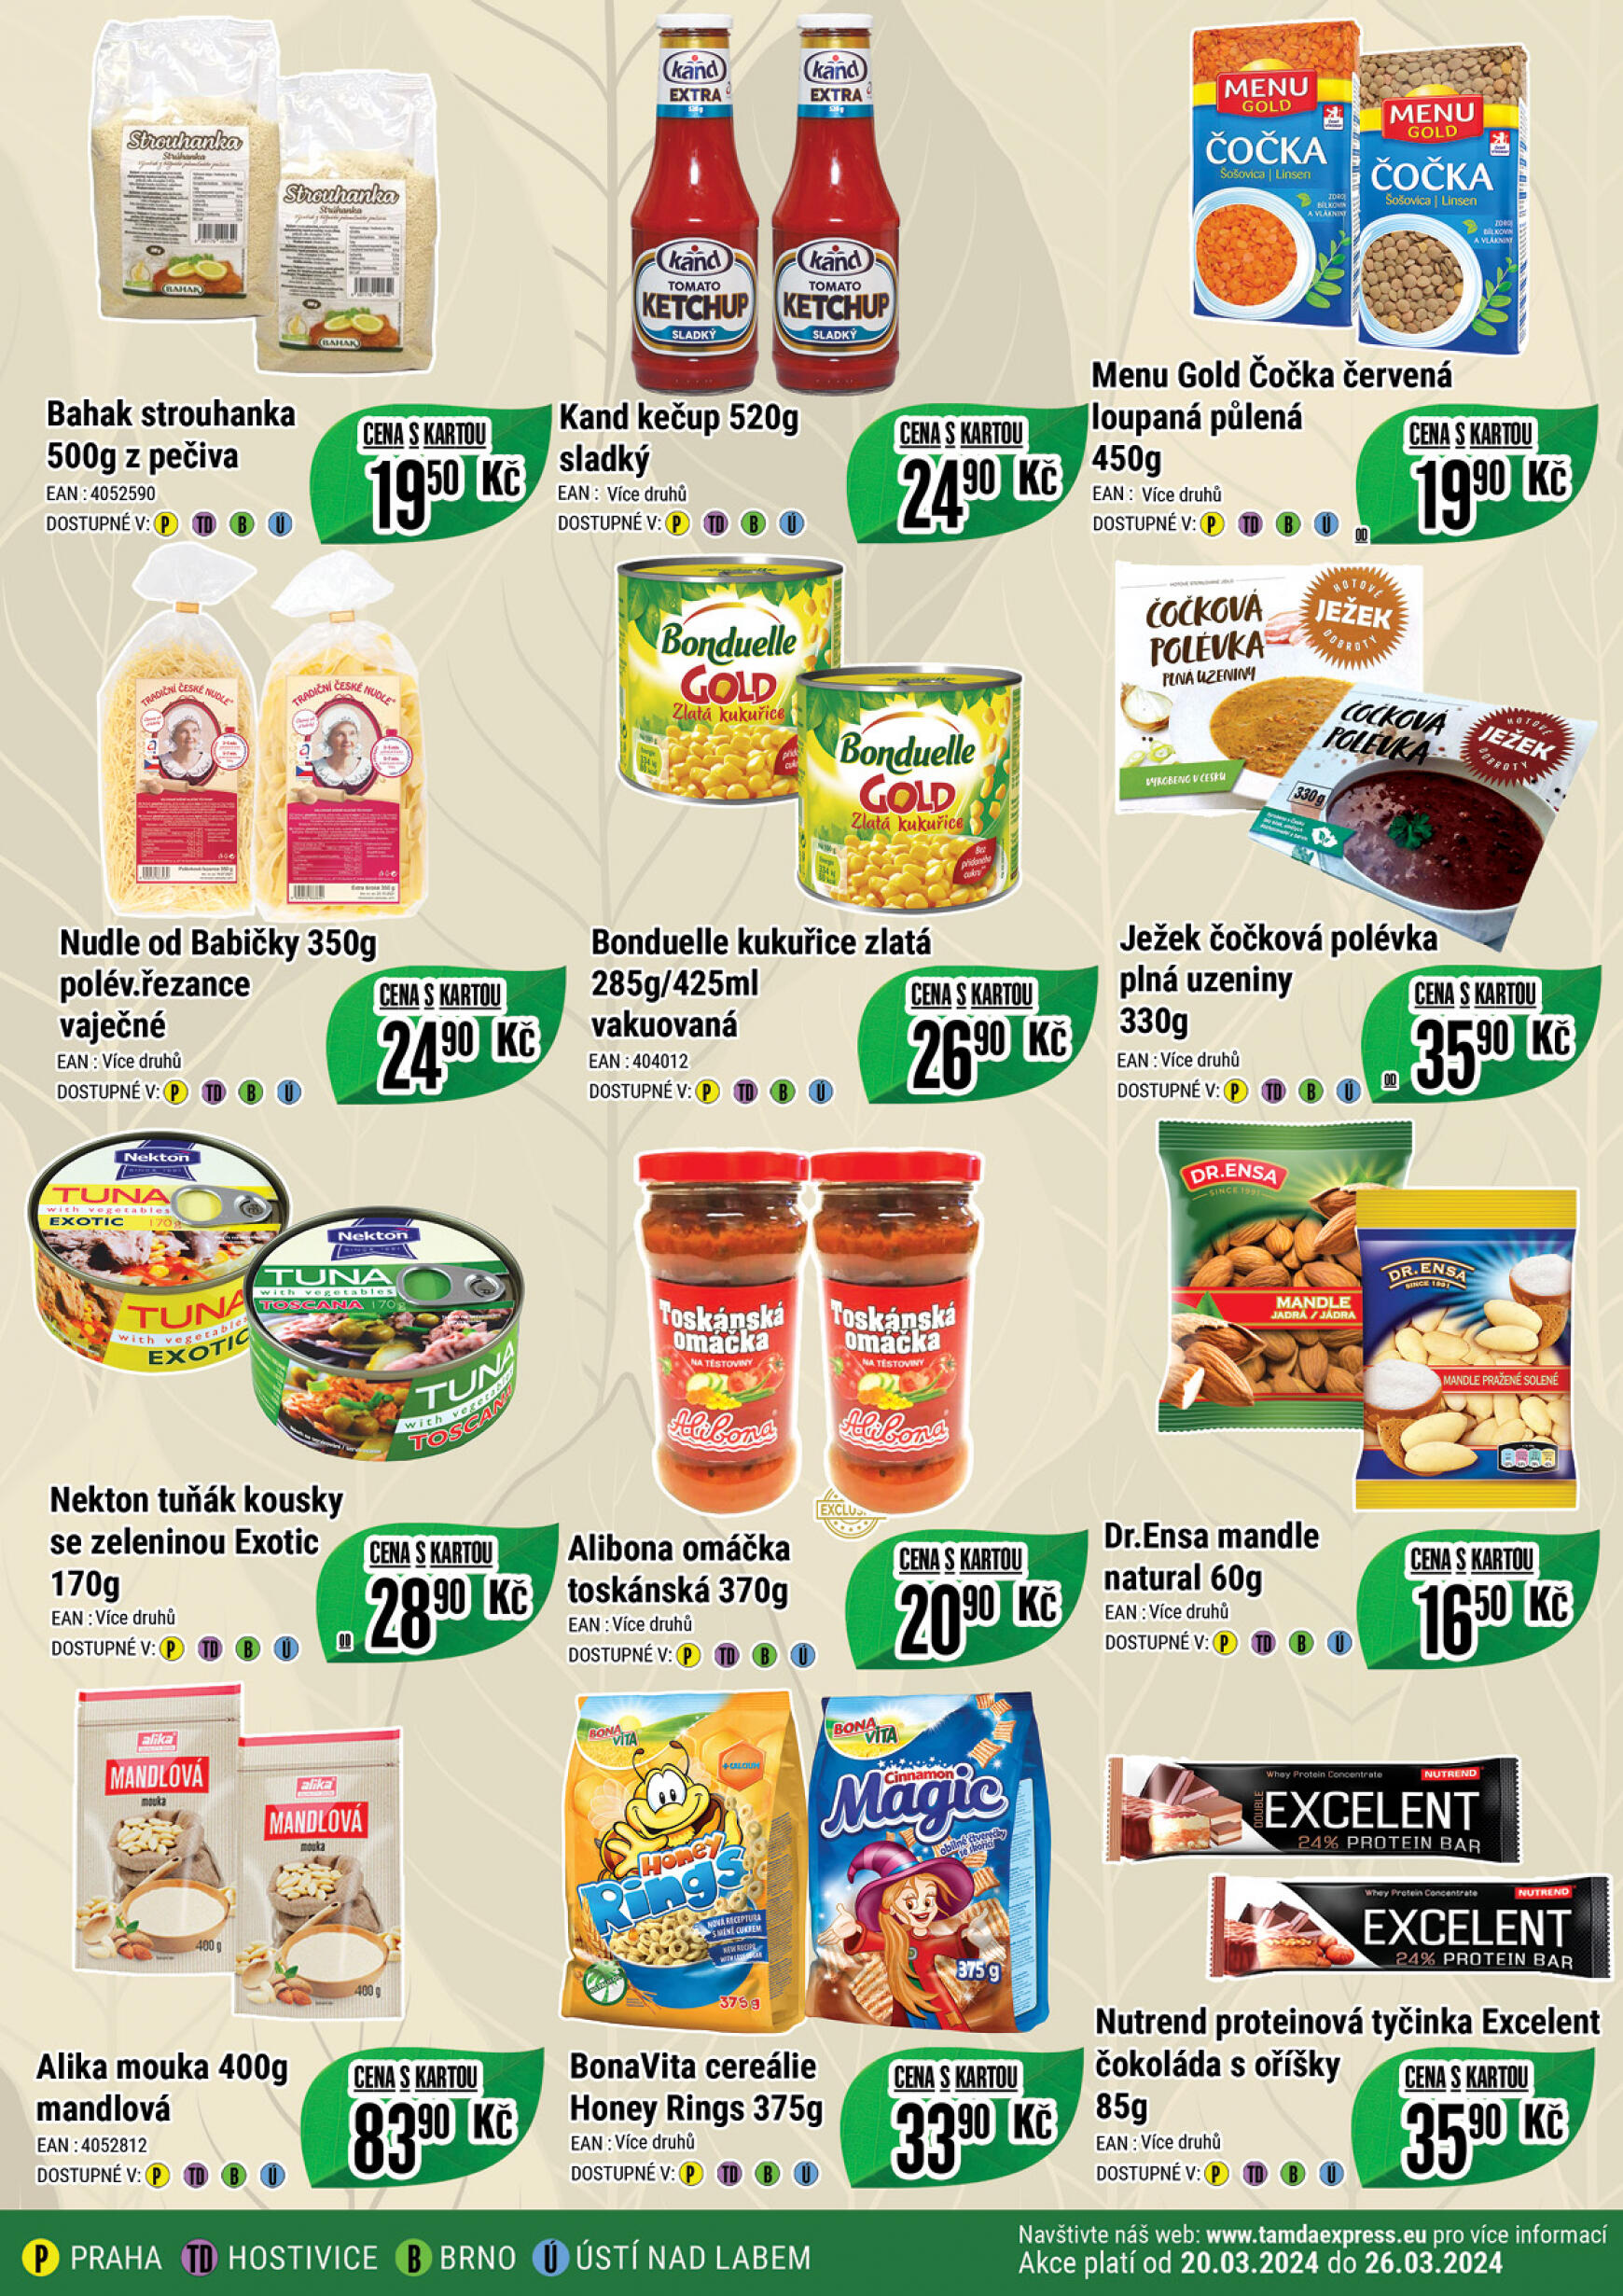 tamda-foods - Tamda Foods platný od 20.03.2024 - page: 3